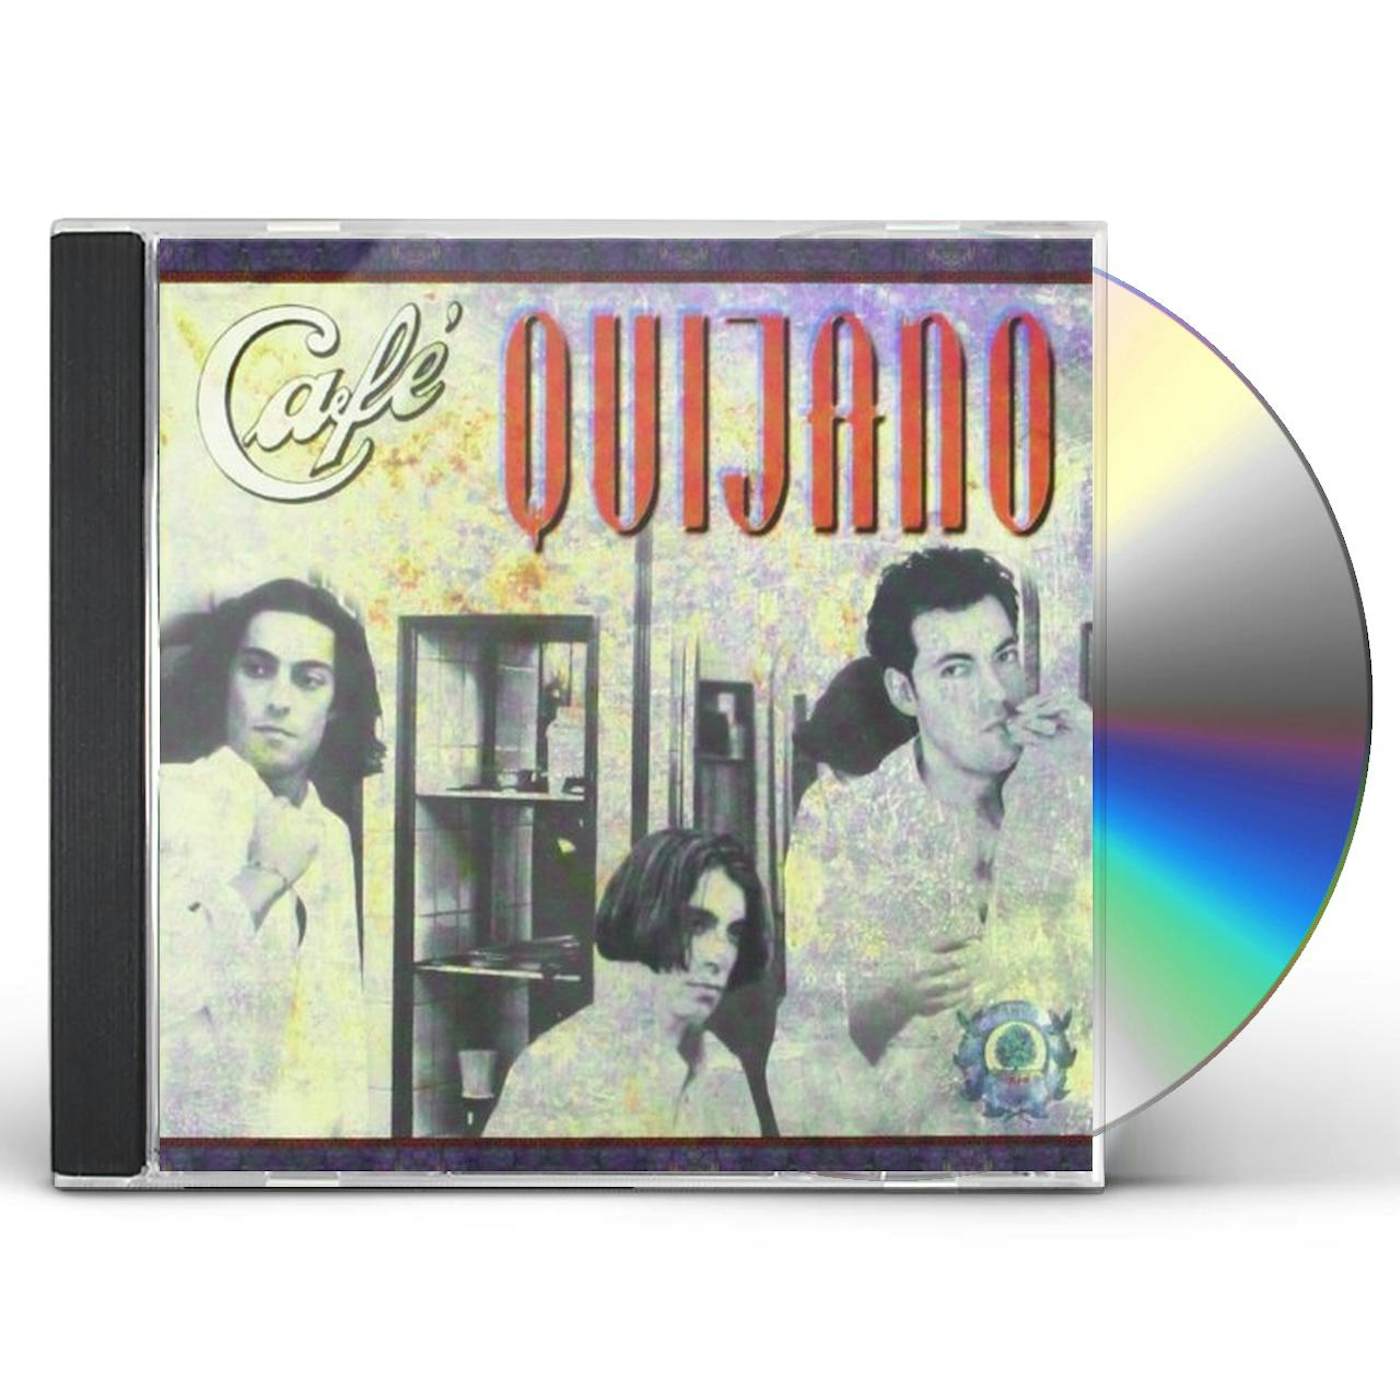 ESSENTIAL ALBUMS-Café Quijano CD